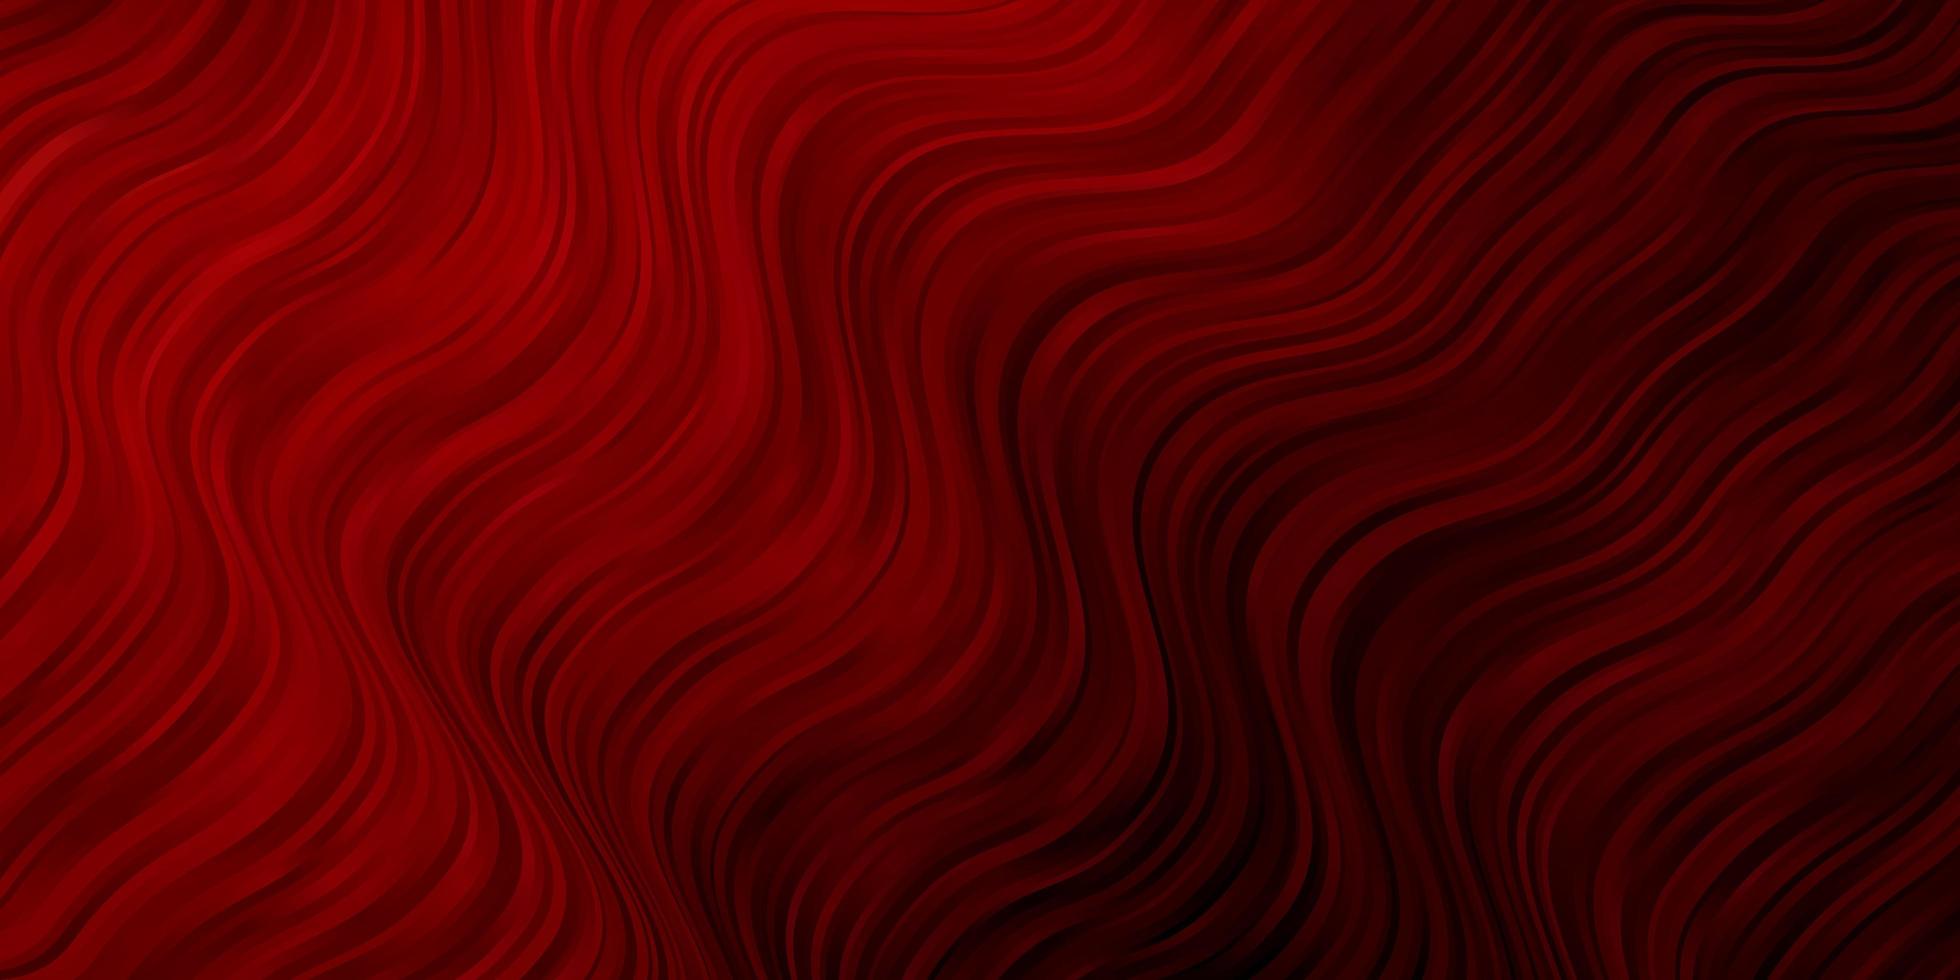 Telón de fondo de vector rojo oscuro con curvas.